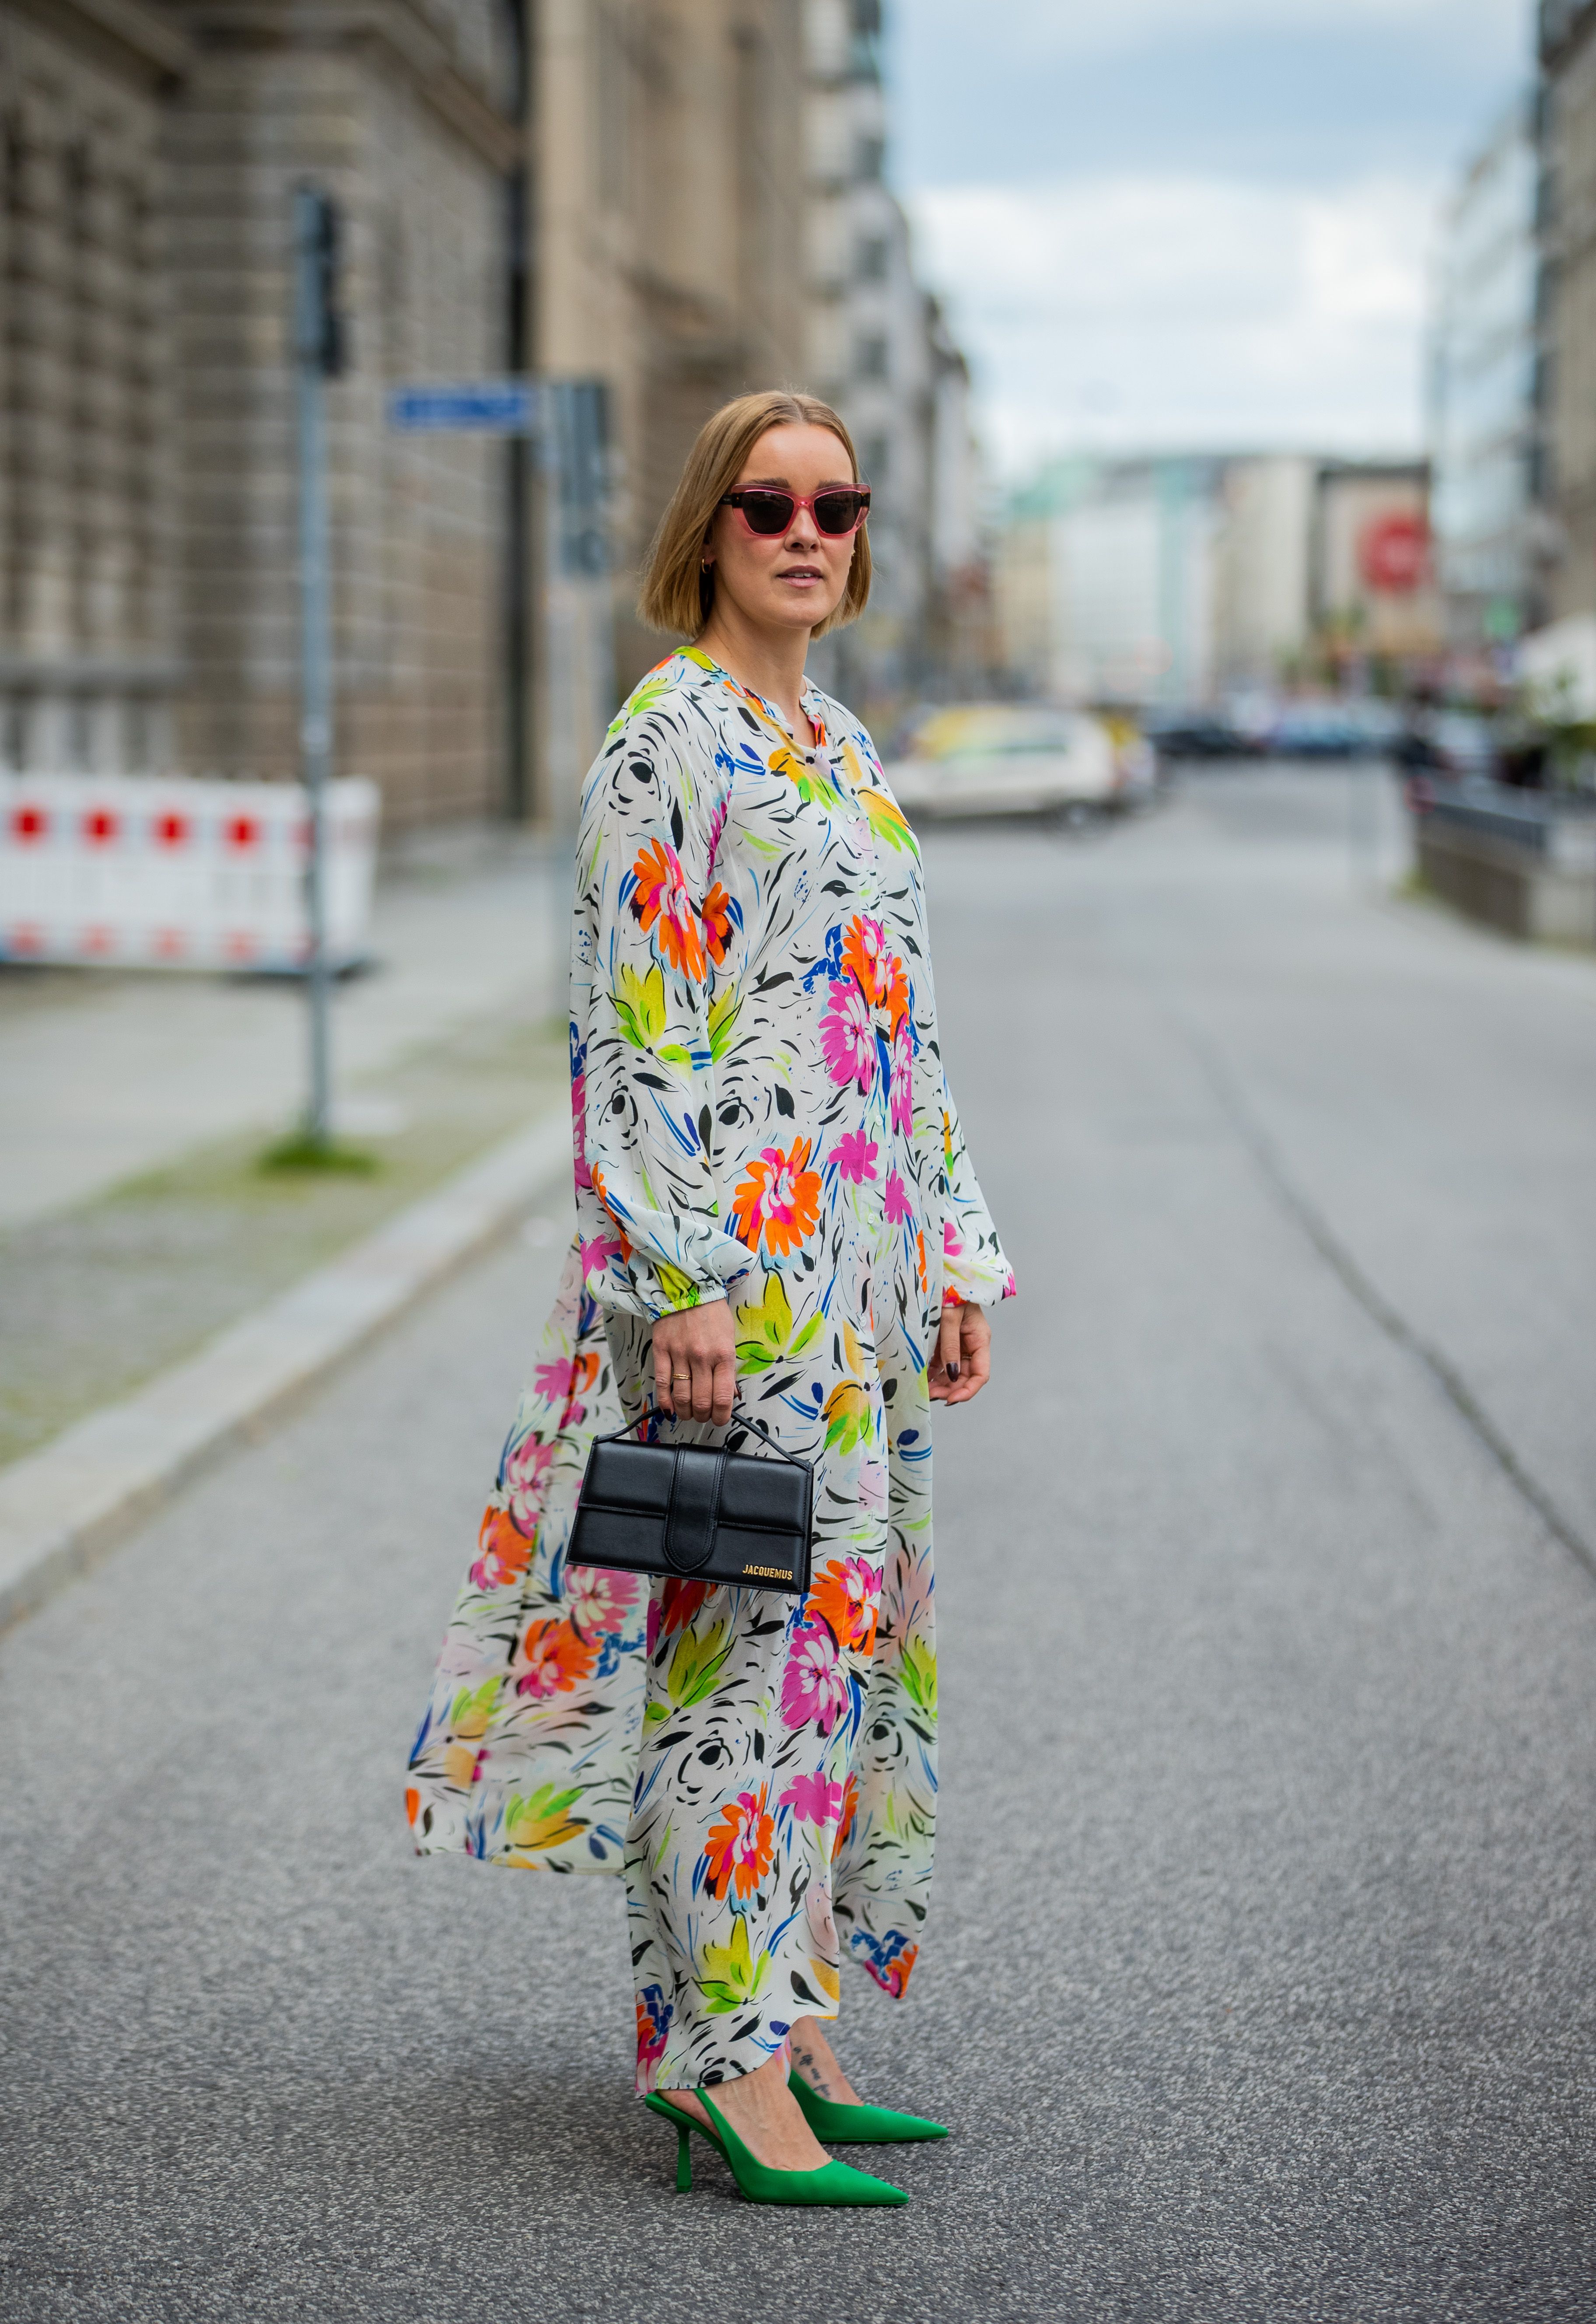 Rebajas de Zara: 7 vestidos preciosos para este verano